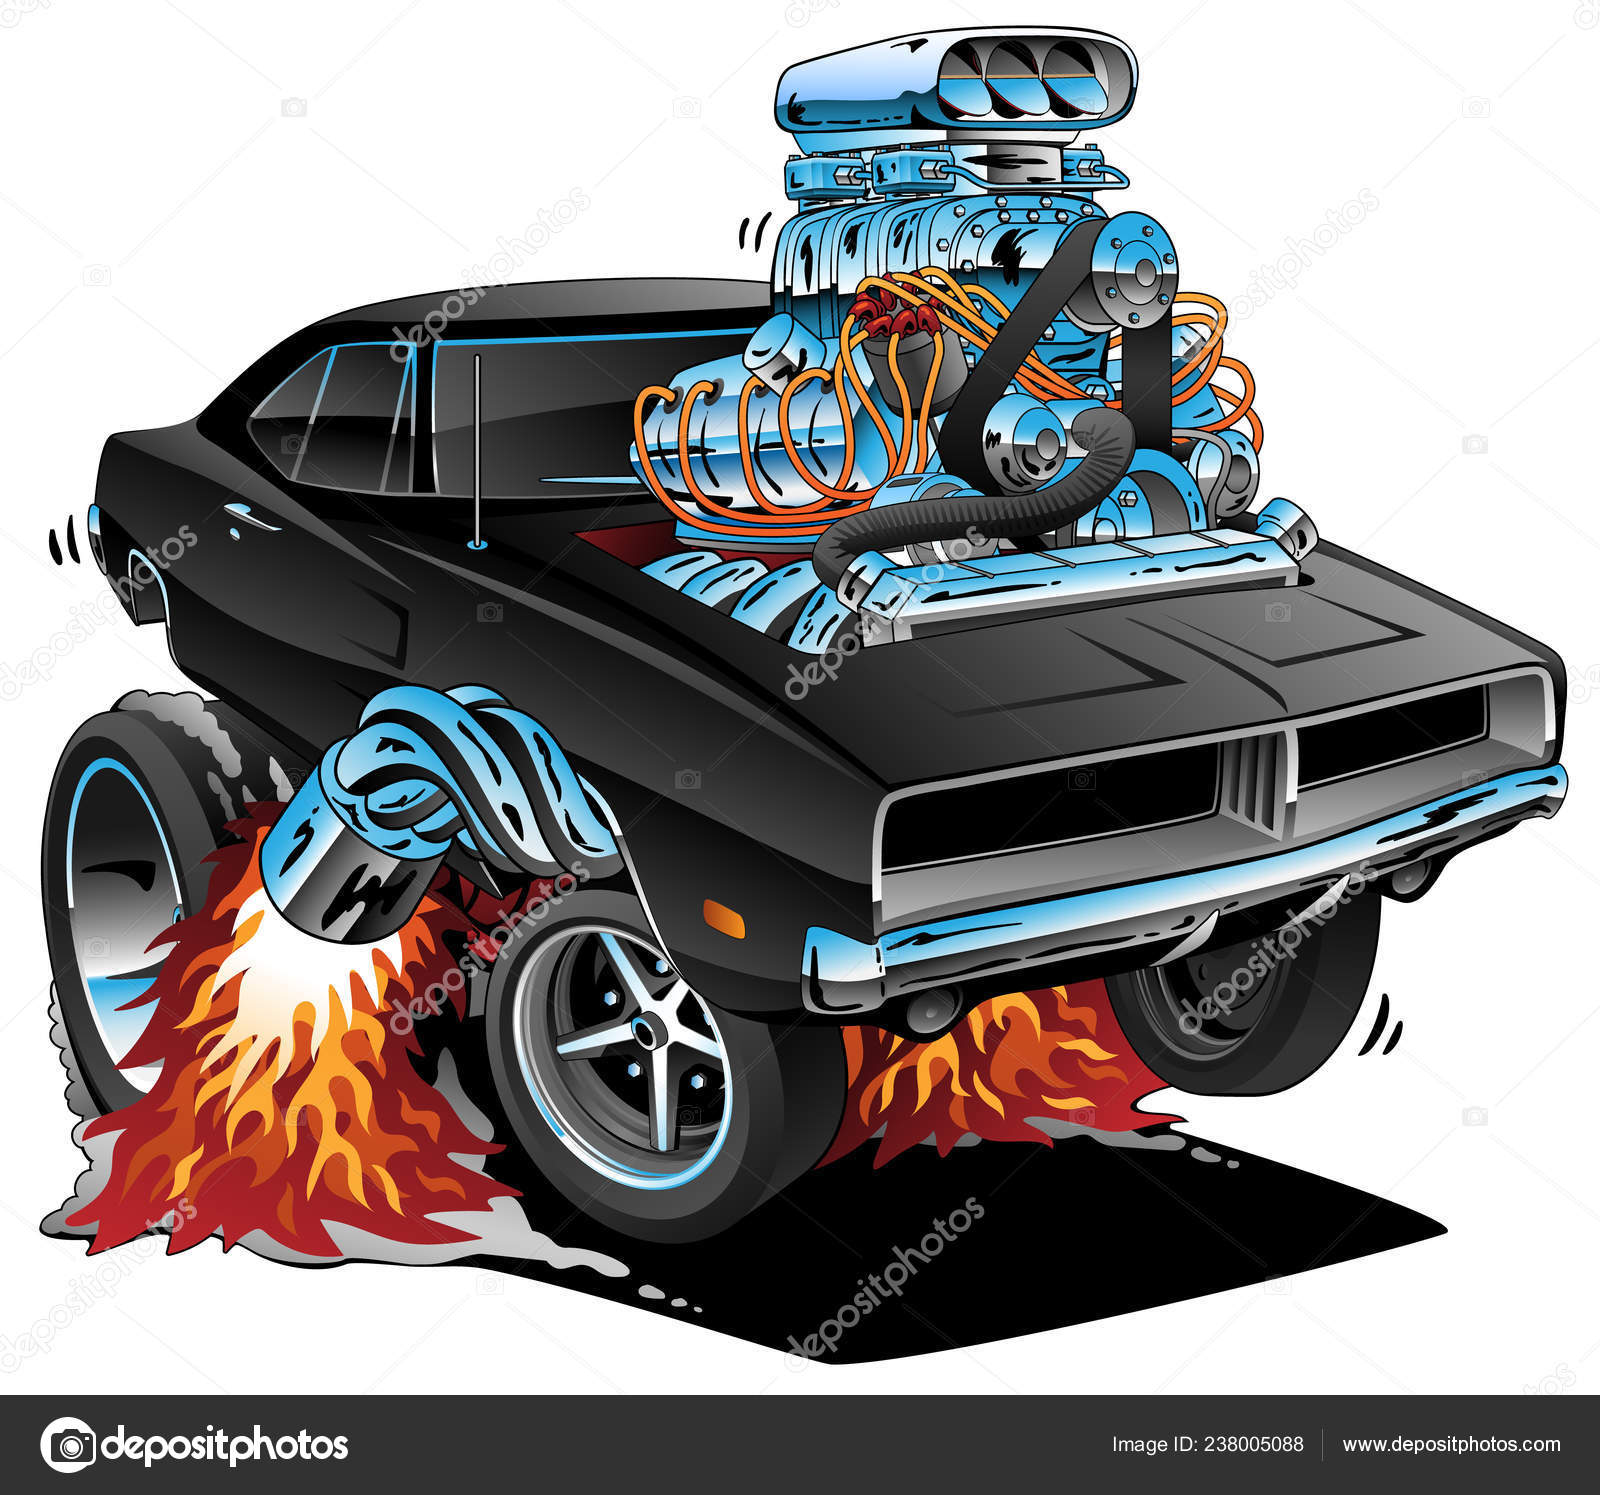 Hot · rod · carro · de · corrida · motor · desenho · animado · legal ·  muscle · car - ilustração de vetor © jeff_hobrath (#8428036)